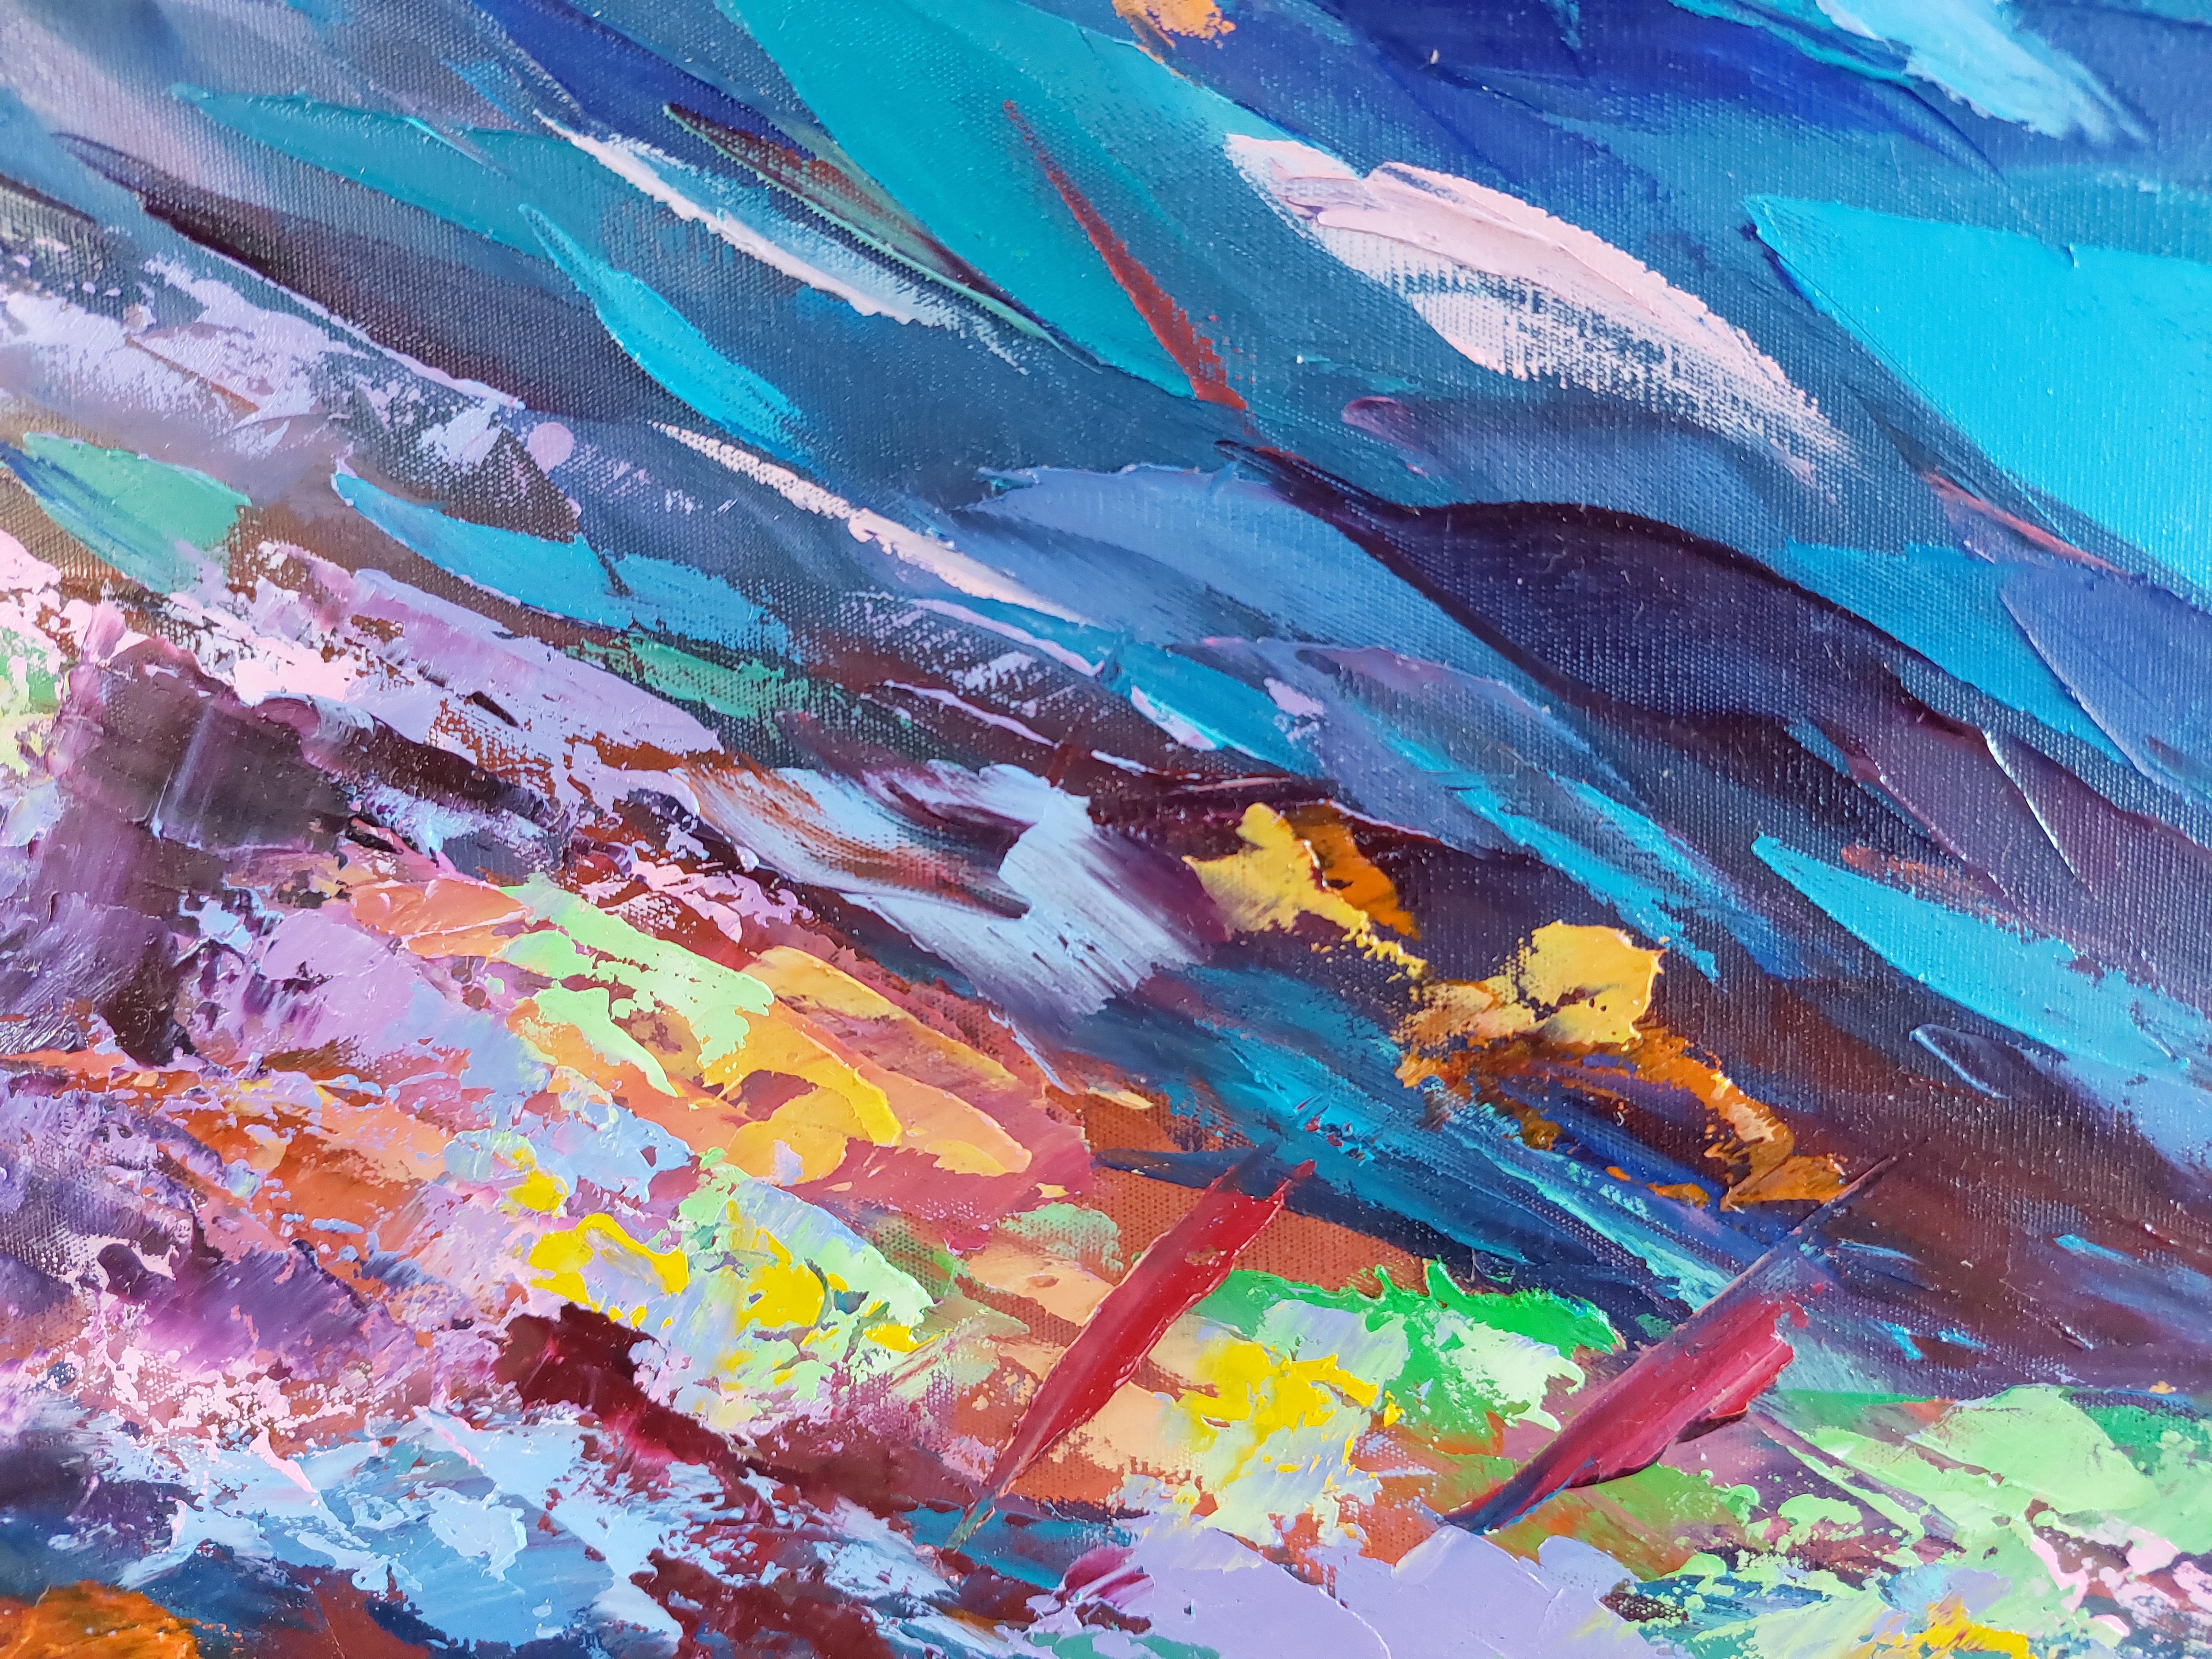 Korallenriff Gemälde von Olga Nikitina
Titel: Korallenriff
Größe:85x60cm
MATERIALIEN: Öl, Spannleinwand, Palettenmesser
Versand: Galerie-Standardverpackung, Expressversand mit Tracking-Nummer.

Dieses fesselnde Ölgemälde auf Leinwand von Olga